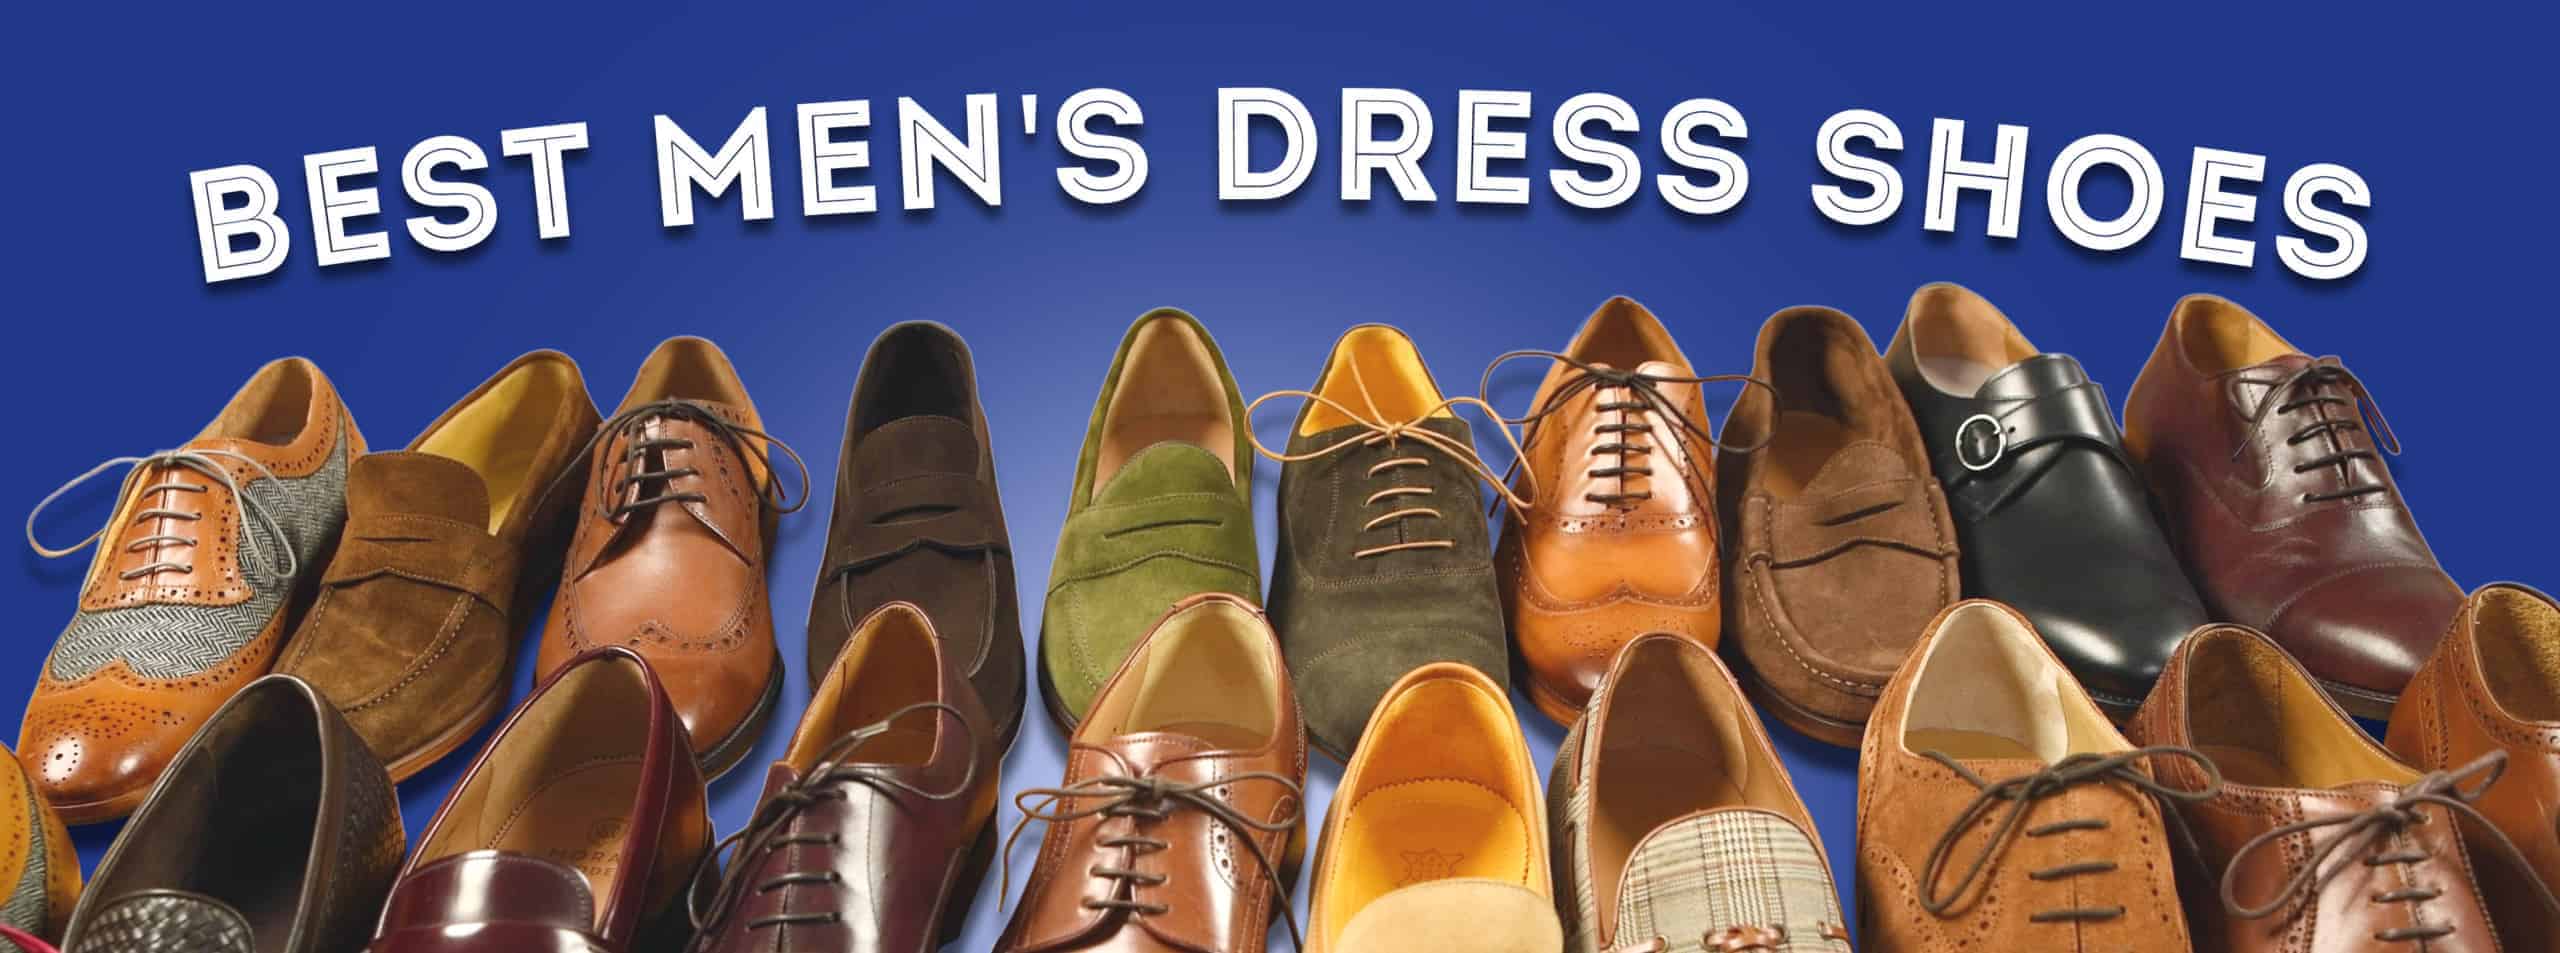 Best Men's Dress Shoes, $100-300 